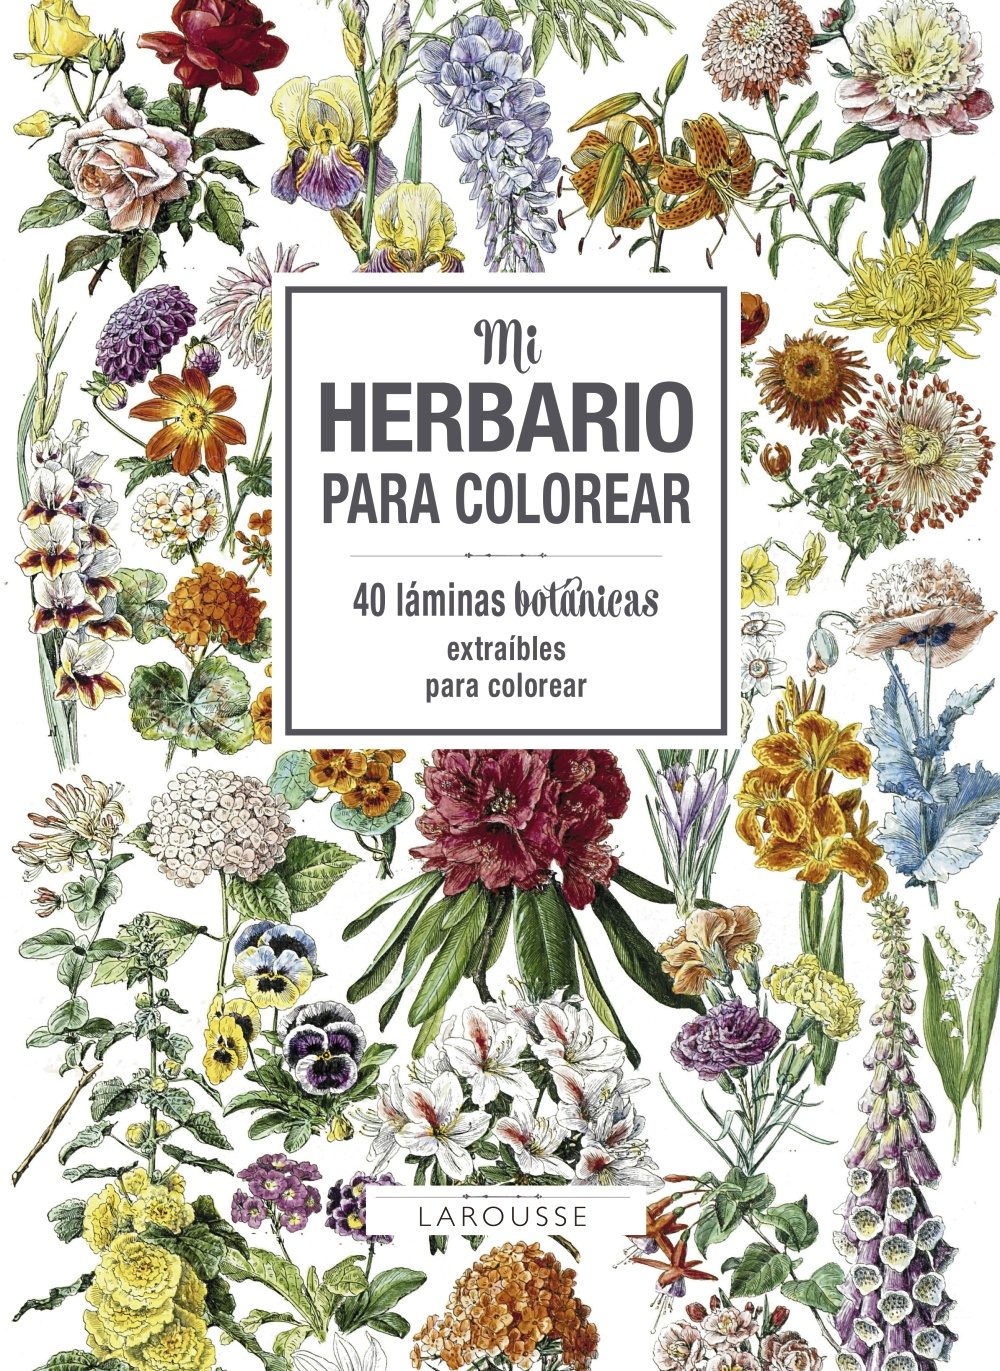 8Mi herbario para colorear